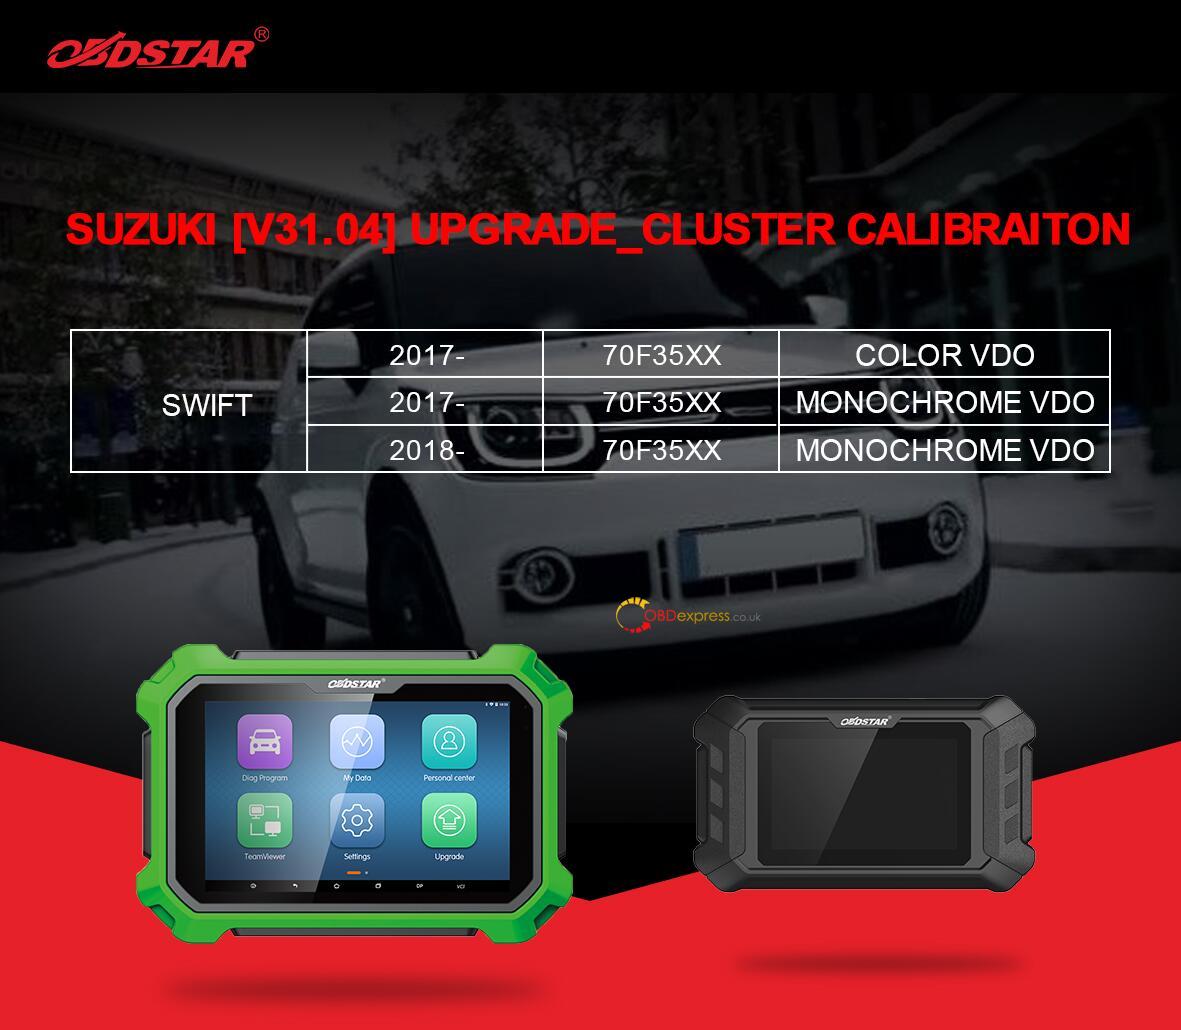 OBDSTAR supports Suzuki Swift mileage programming